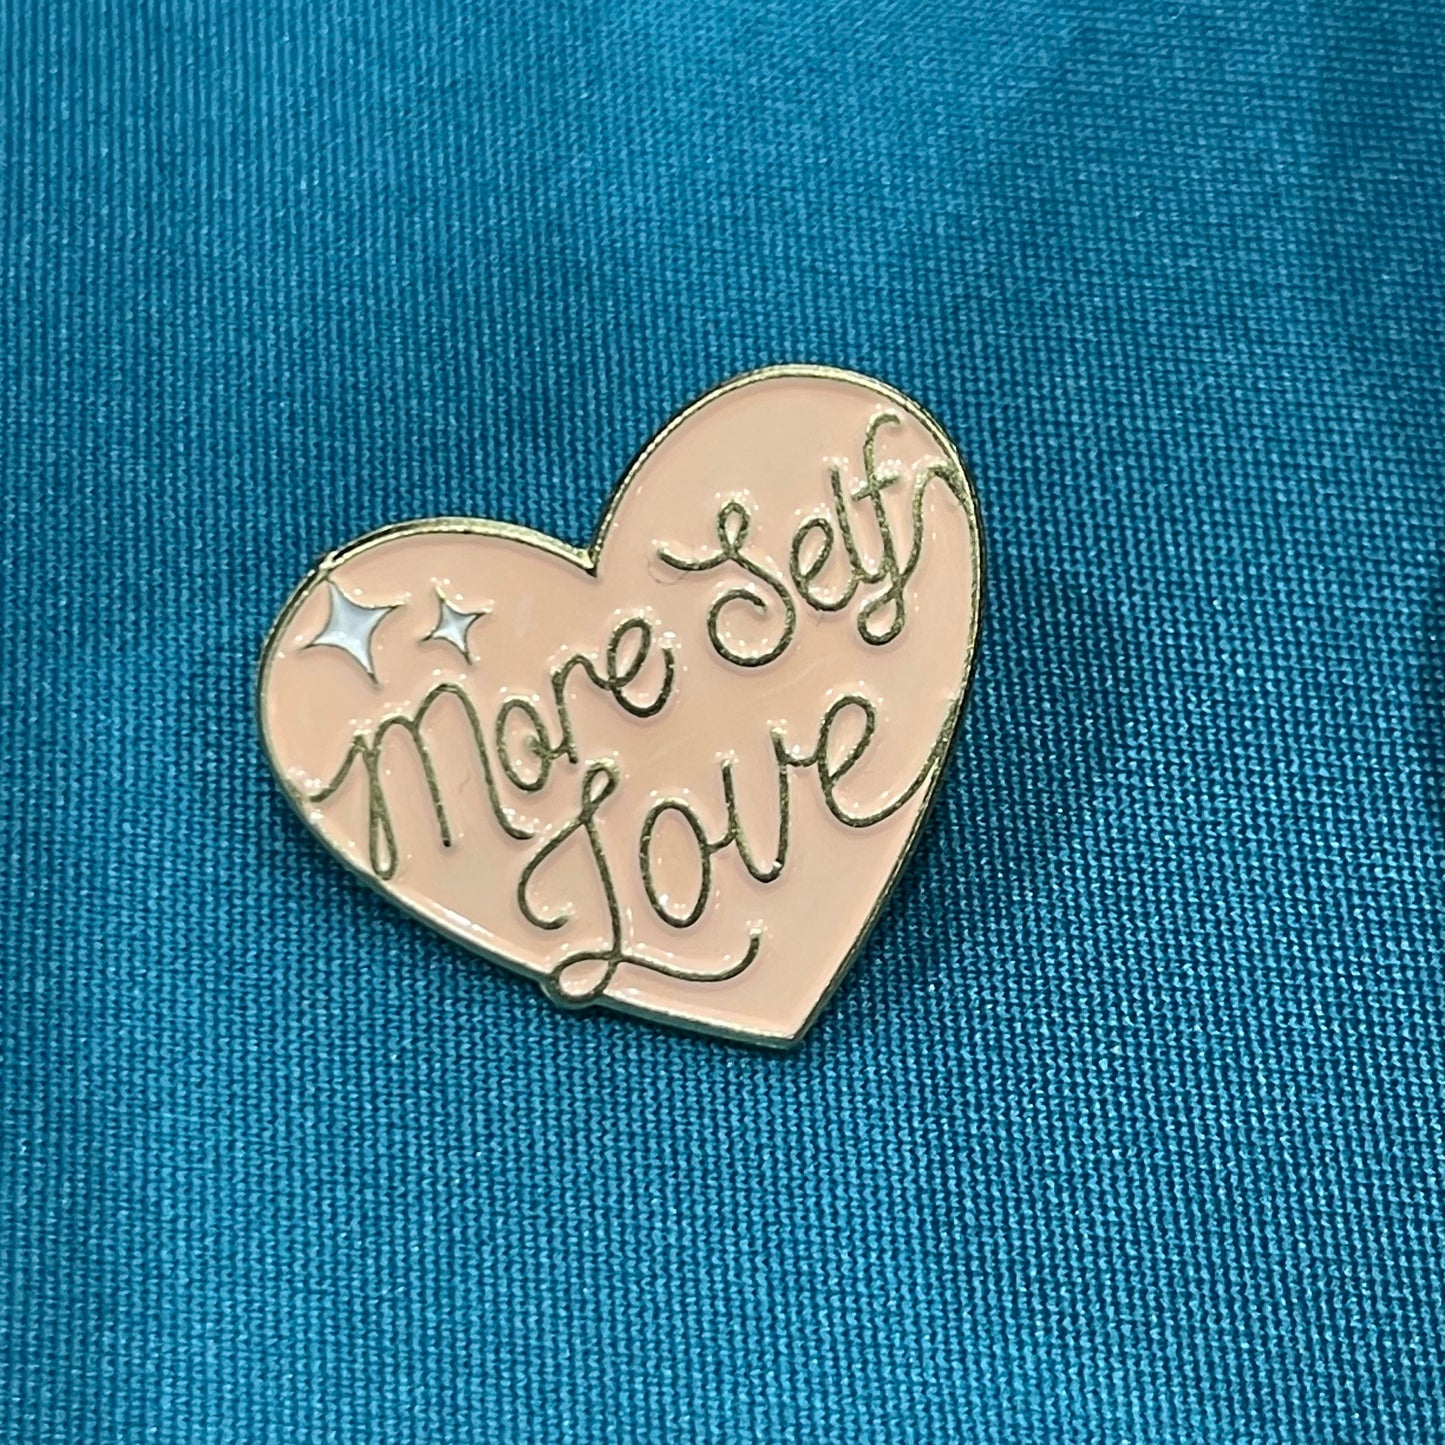 More Self Love Pin